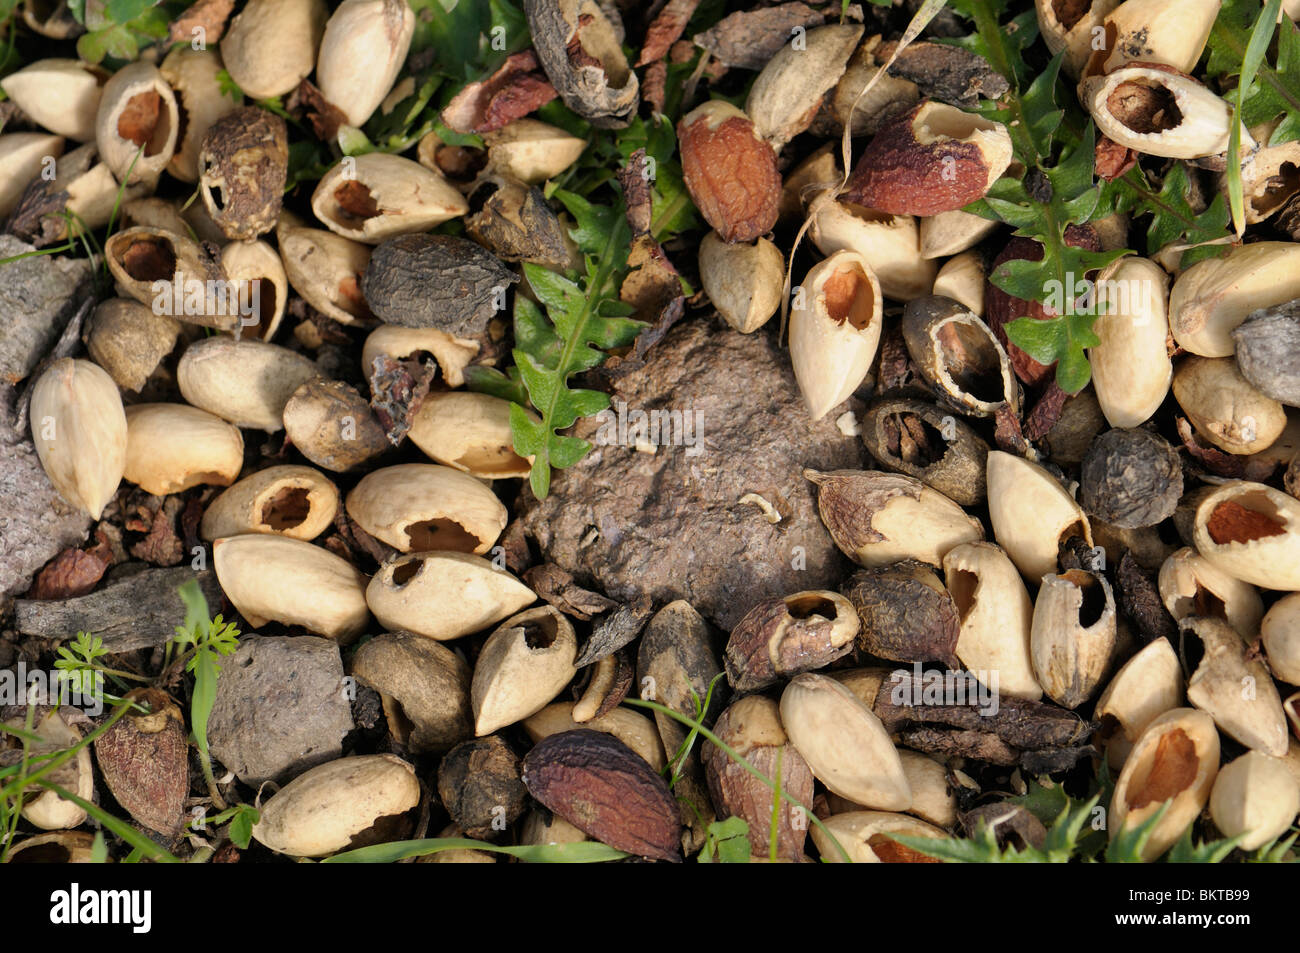 Tür Eekhoorns Gegeten Pistache Noten; Pistazien-eines von Eichhörnchen Stockfoto